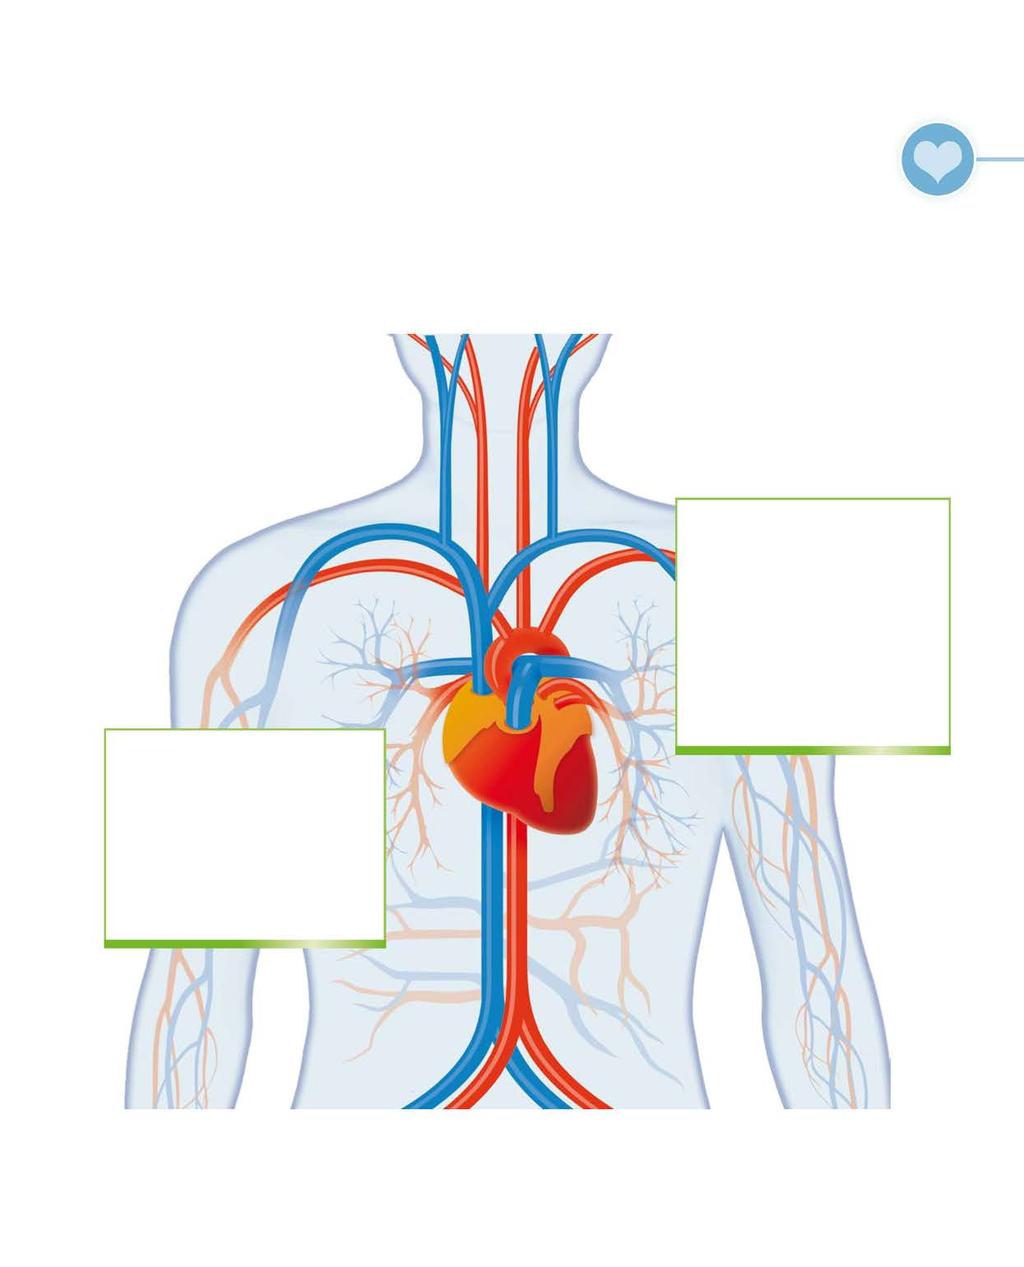 VOEDINGSSUPPLEMENTEN EN SPECIALE PRODUCTEN 17 Het cardiovasculair systeem Wie zijn cardiovasculair systeem daadkrachtig wil ondersteunen, kan dit aan de hand van eenvoudige werkzame middelen.